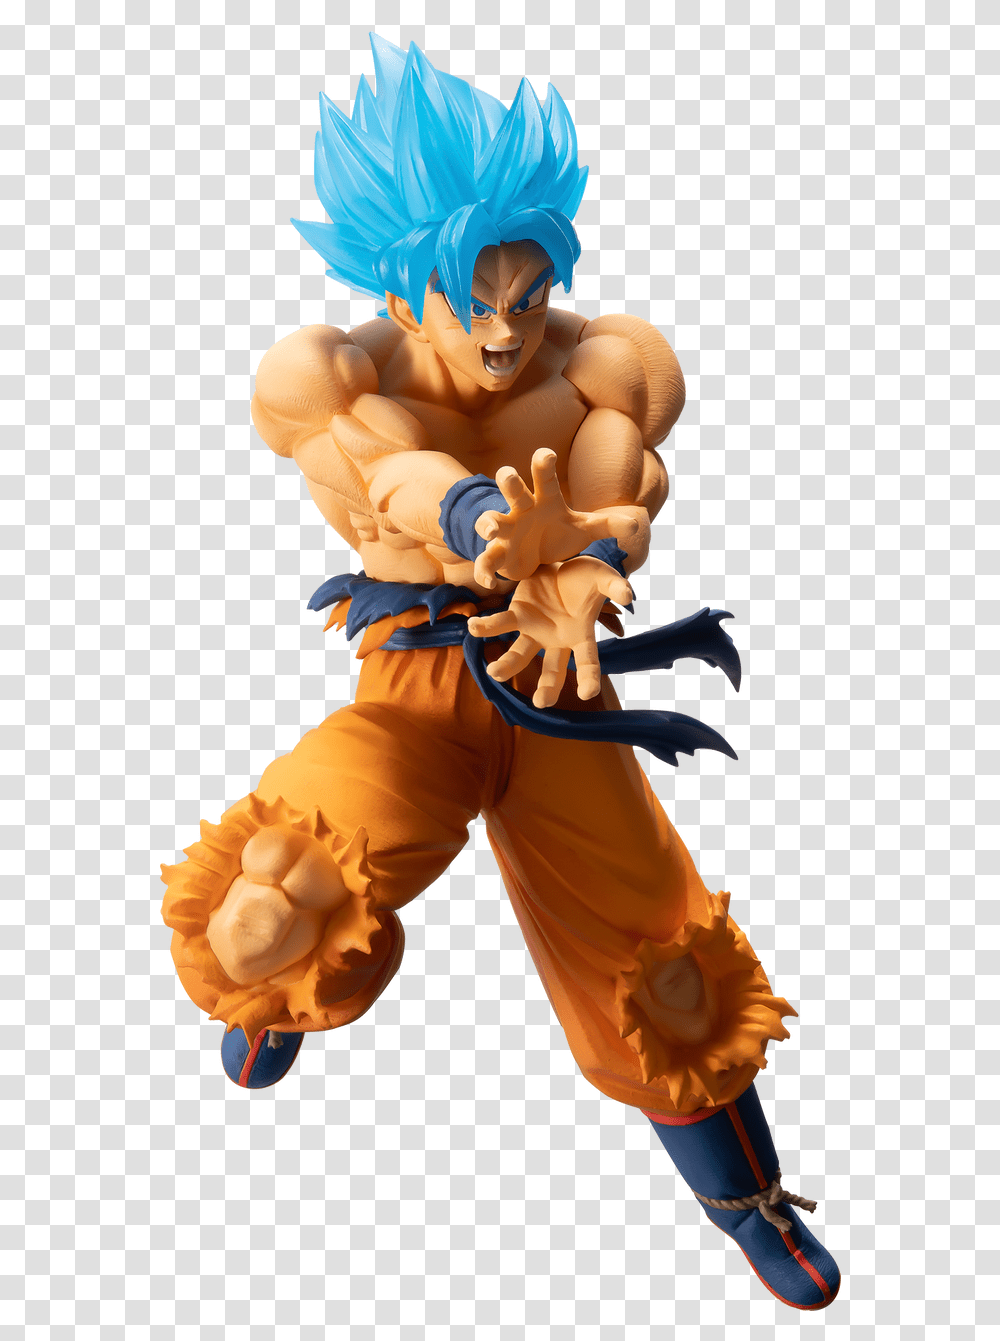 Super Saiyan God Goku Super Saiyan God Ss Goku, Astronaut, Person, Human, Mascot Transparent Png